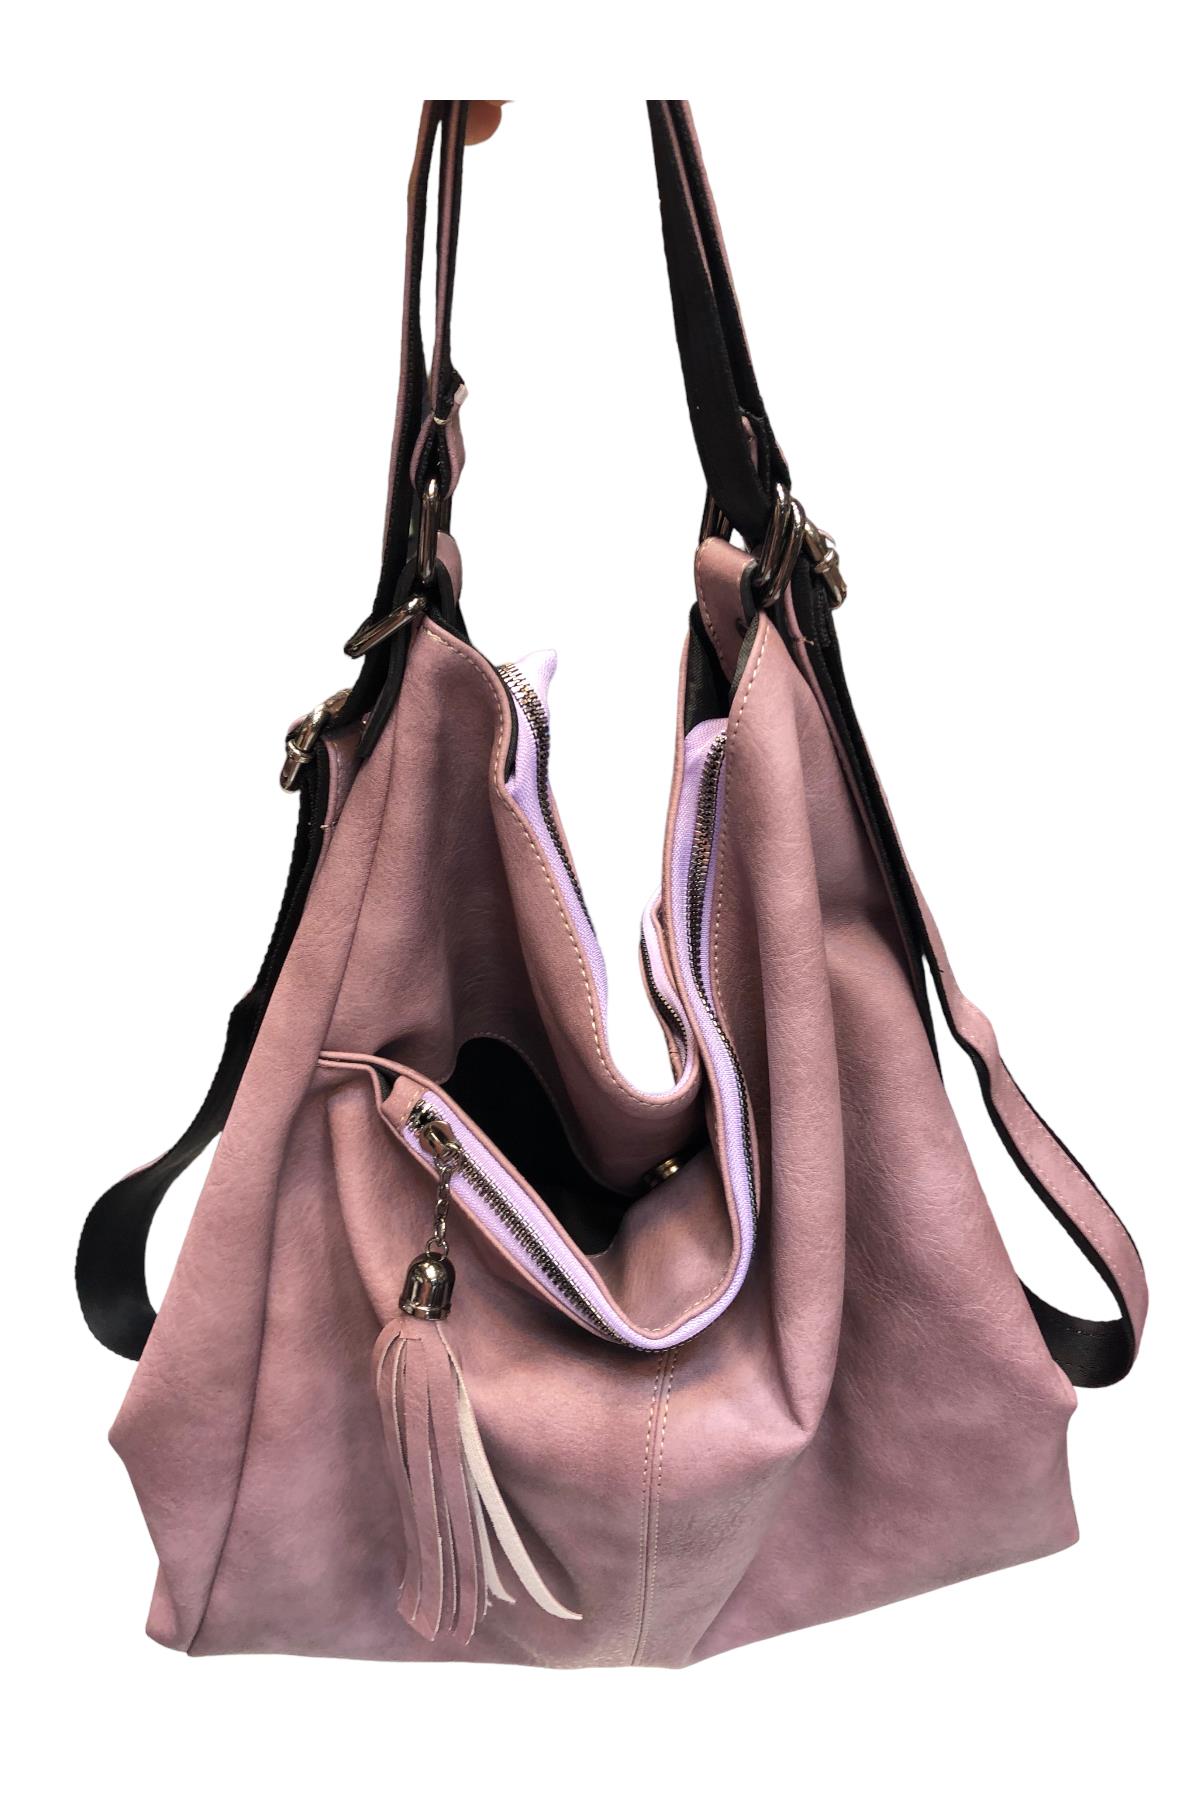 Lila Kadın sırt ve kol çantası modeli yumuşak deri ebat 40 cm 35  |elizabell.com.tr